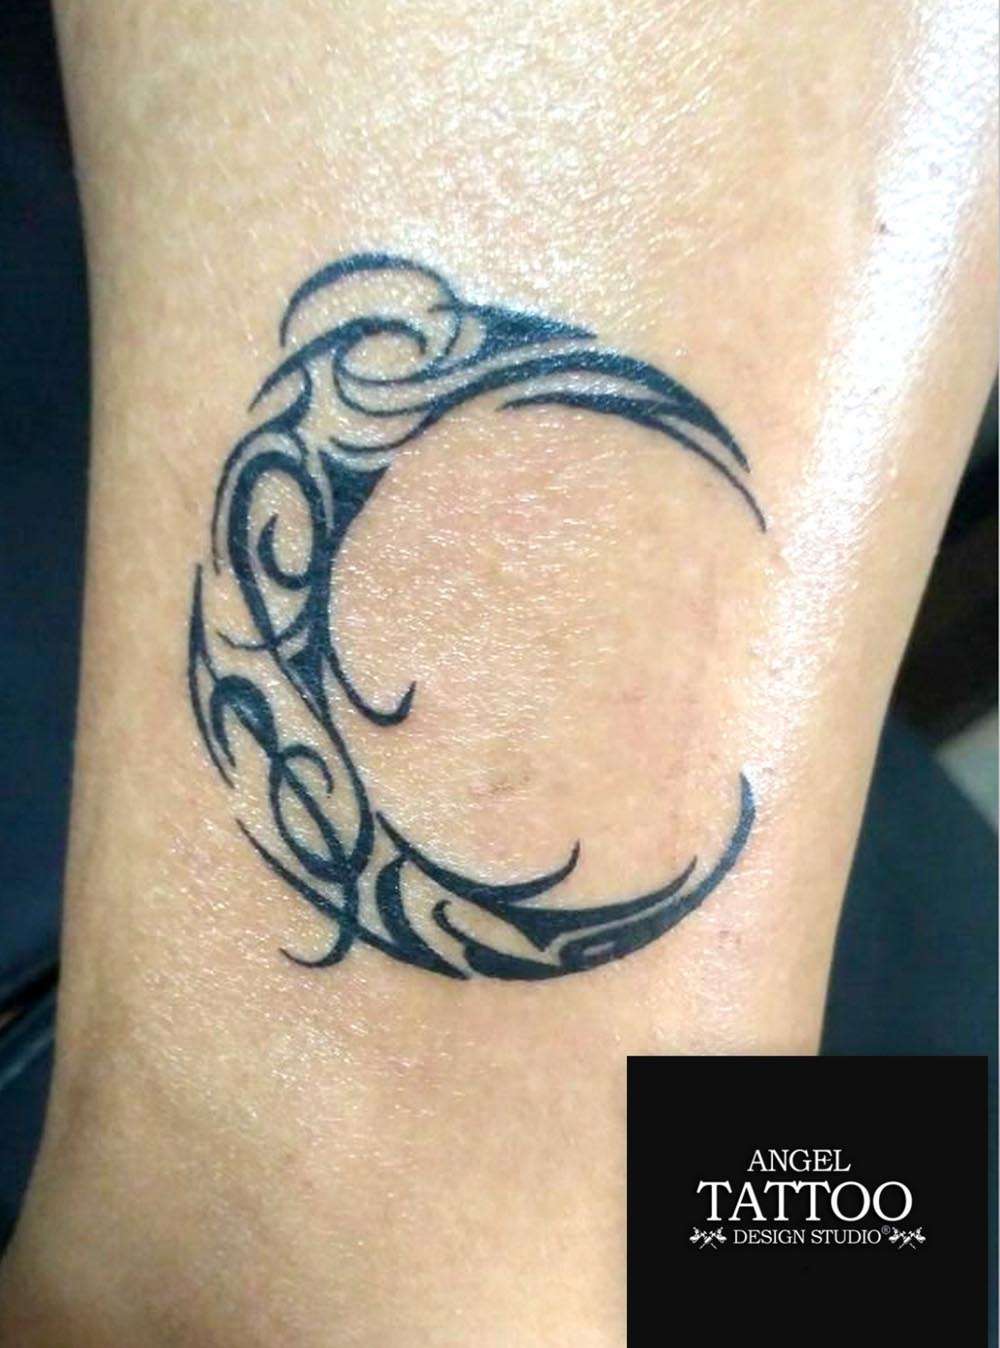 Tattoo uploaded by Kiran's tattoo mehsana • shivay tattoo | name tattoo |  mehsana • Tattoodo